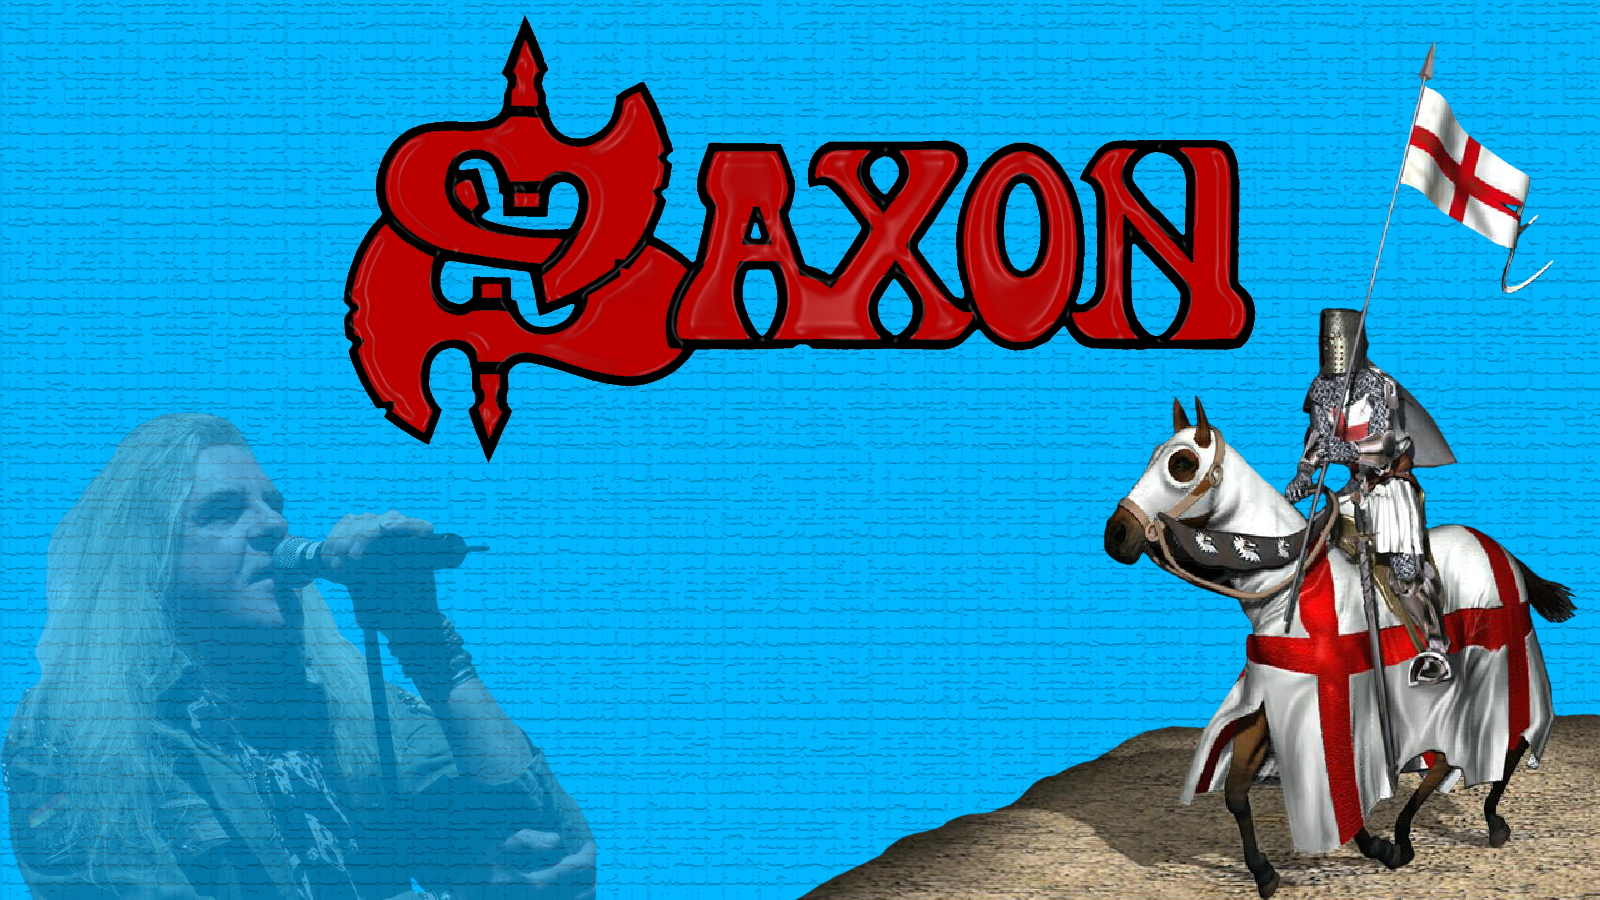 Rock Music Saxon 1600x900